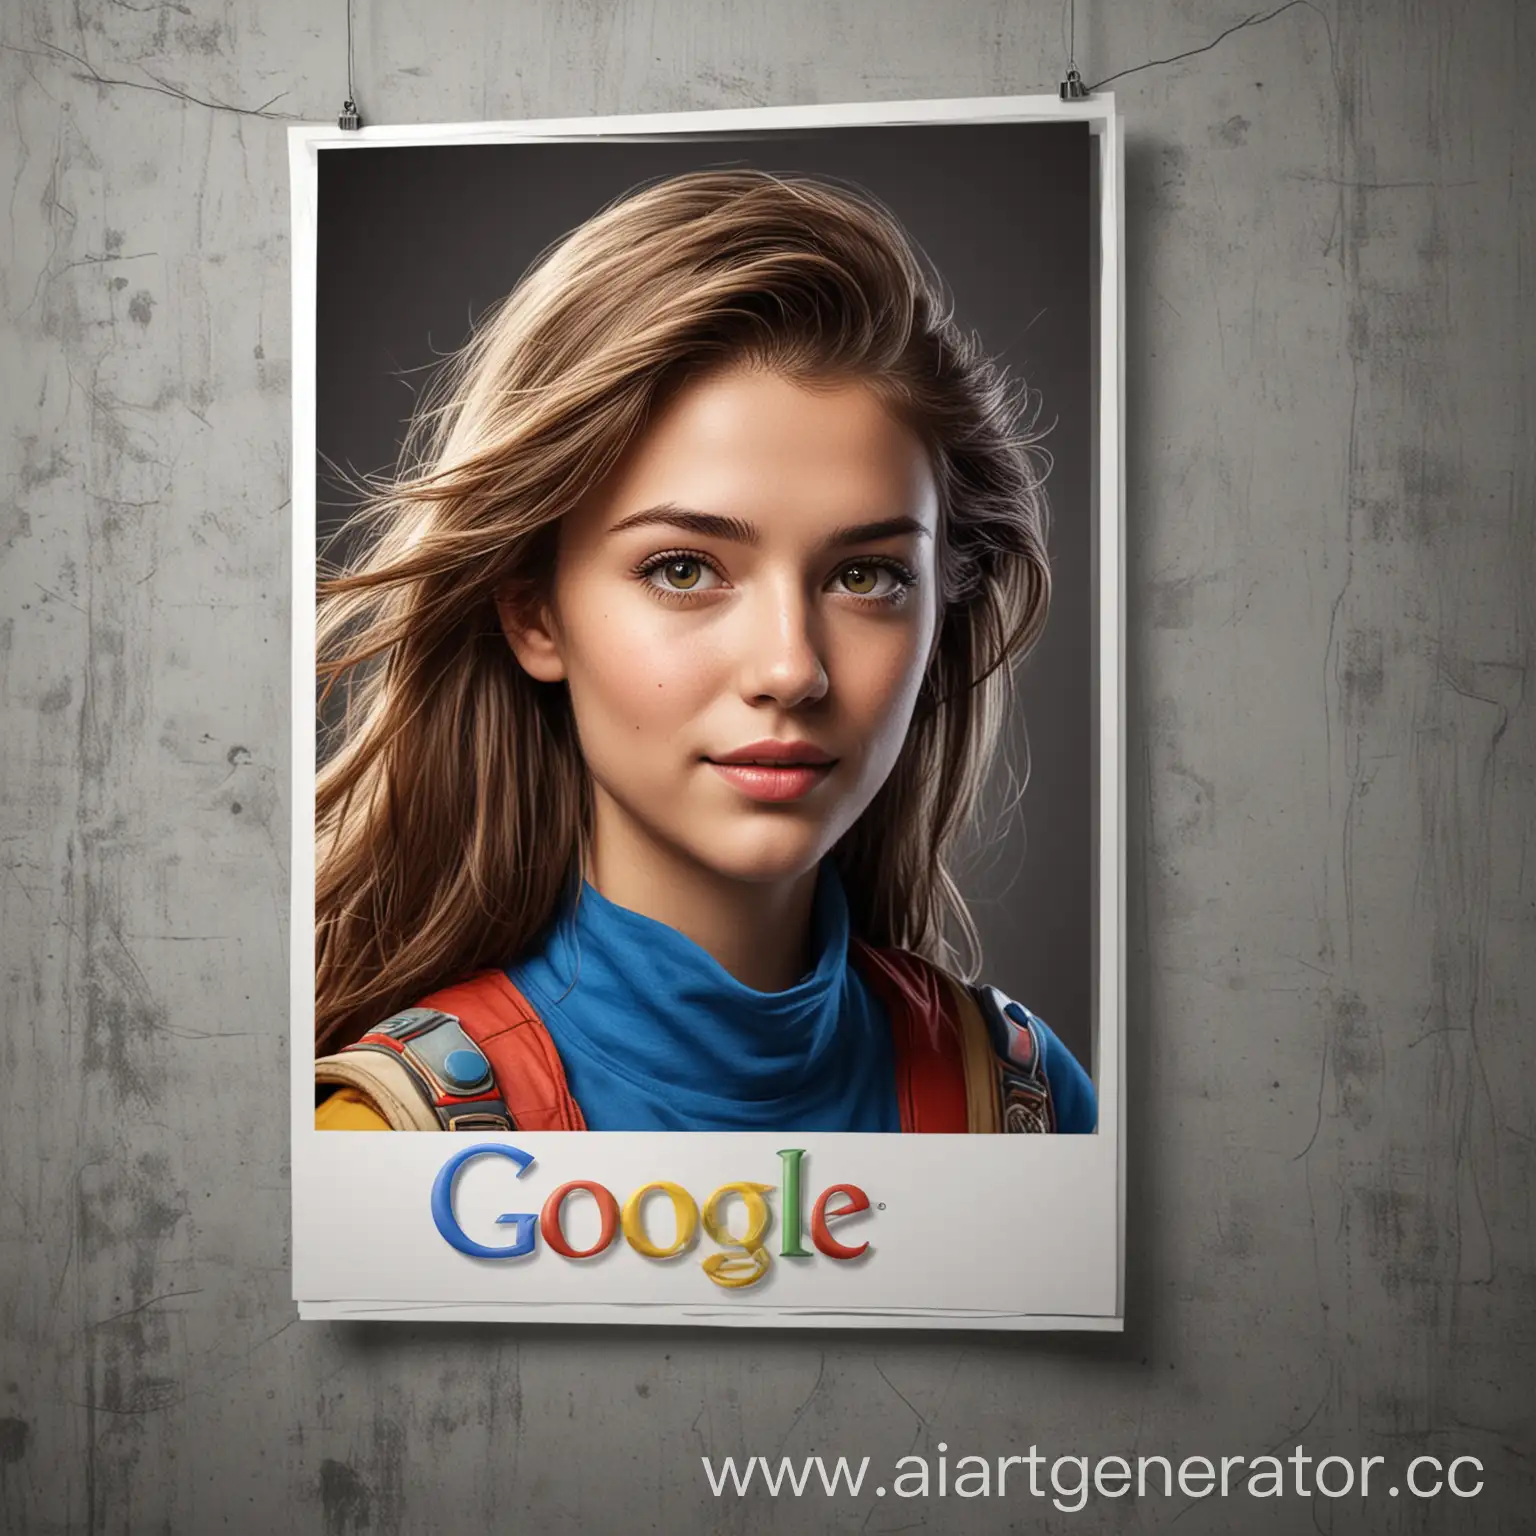 Придумайте и нарисуйте в Photoshop дизайн рекламного
постера с бренд-героем, который будет создавать позитивные ассоциации с поисковиком Google.